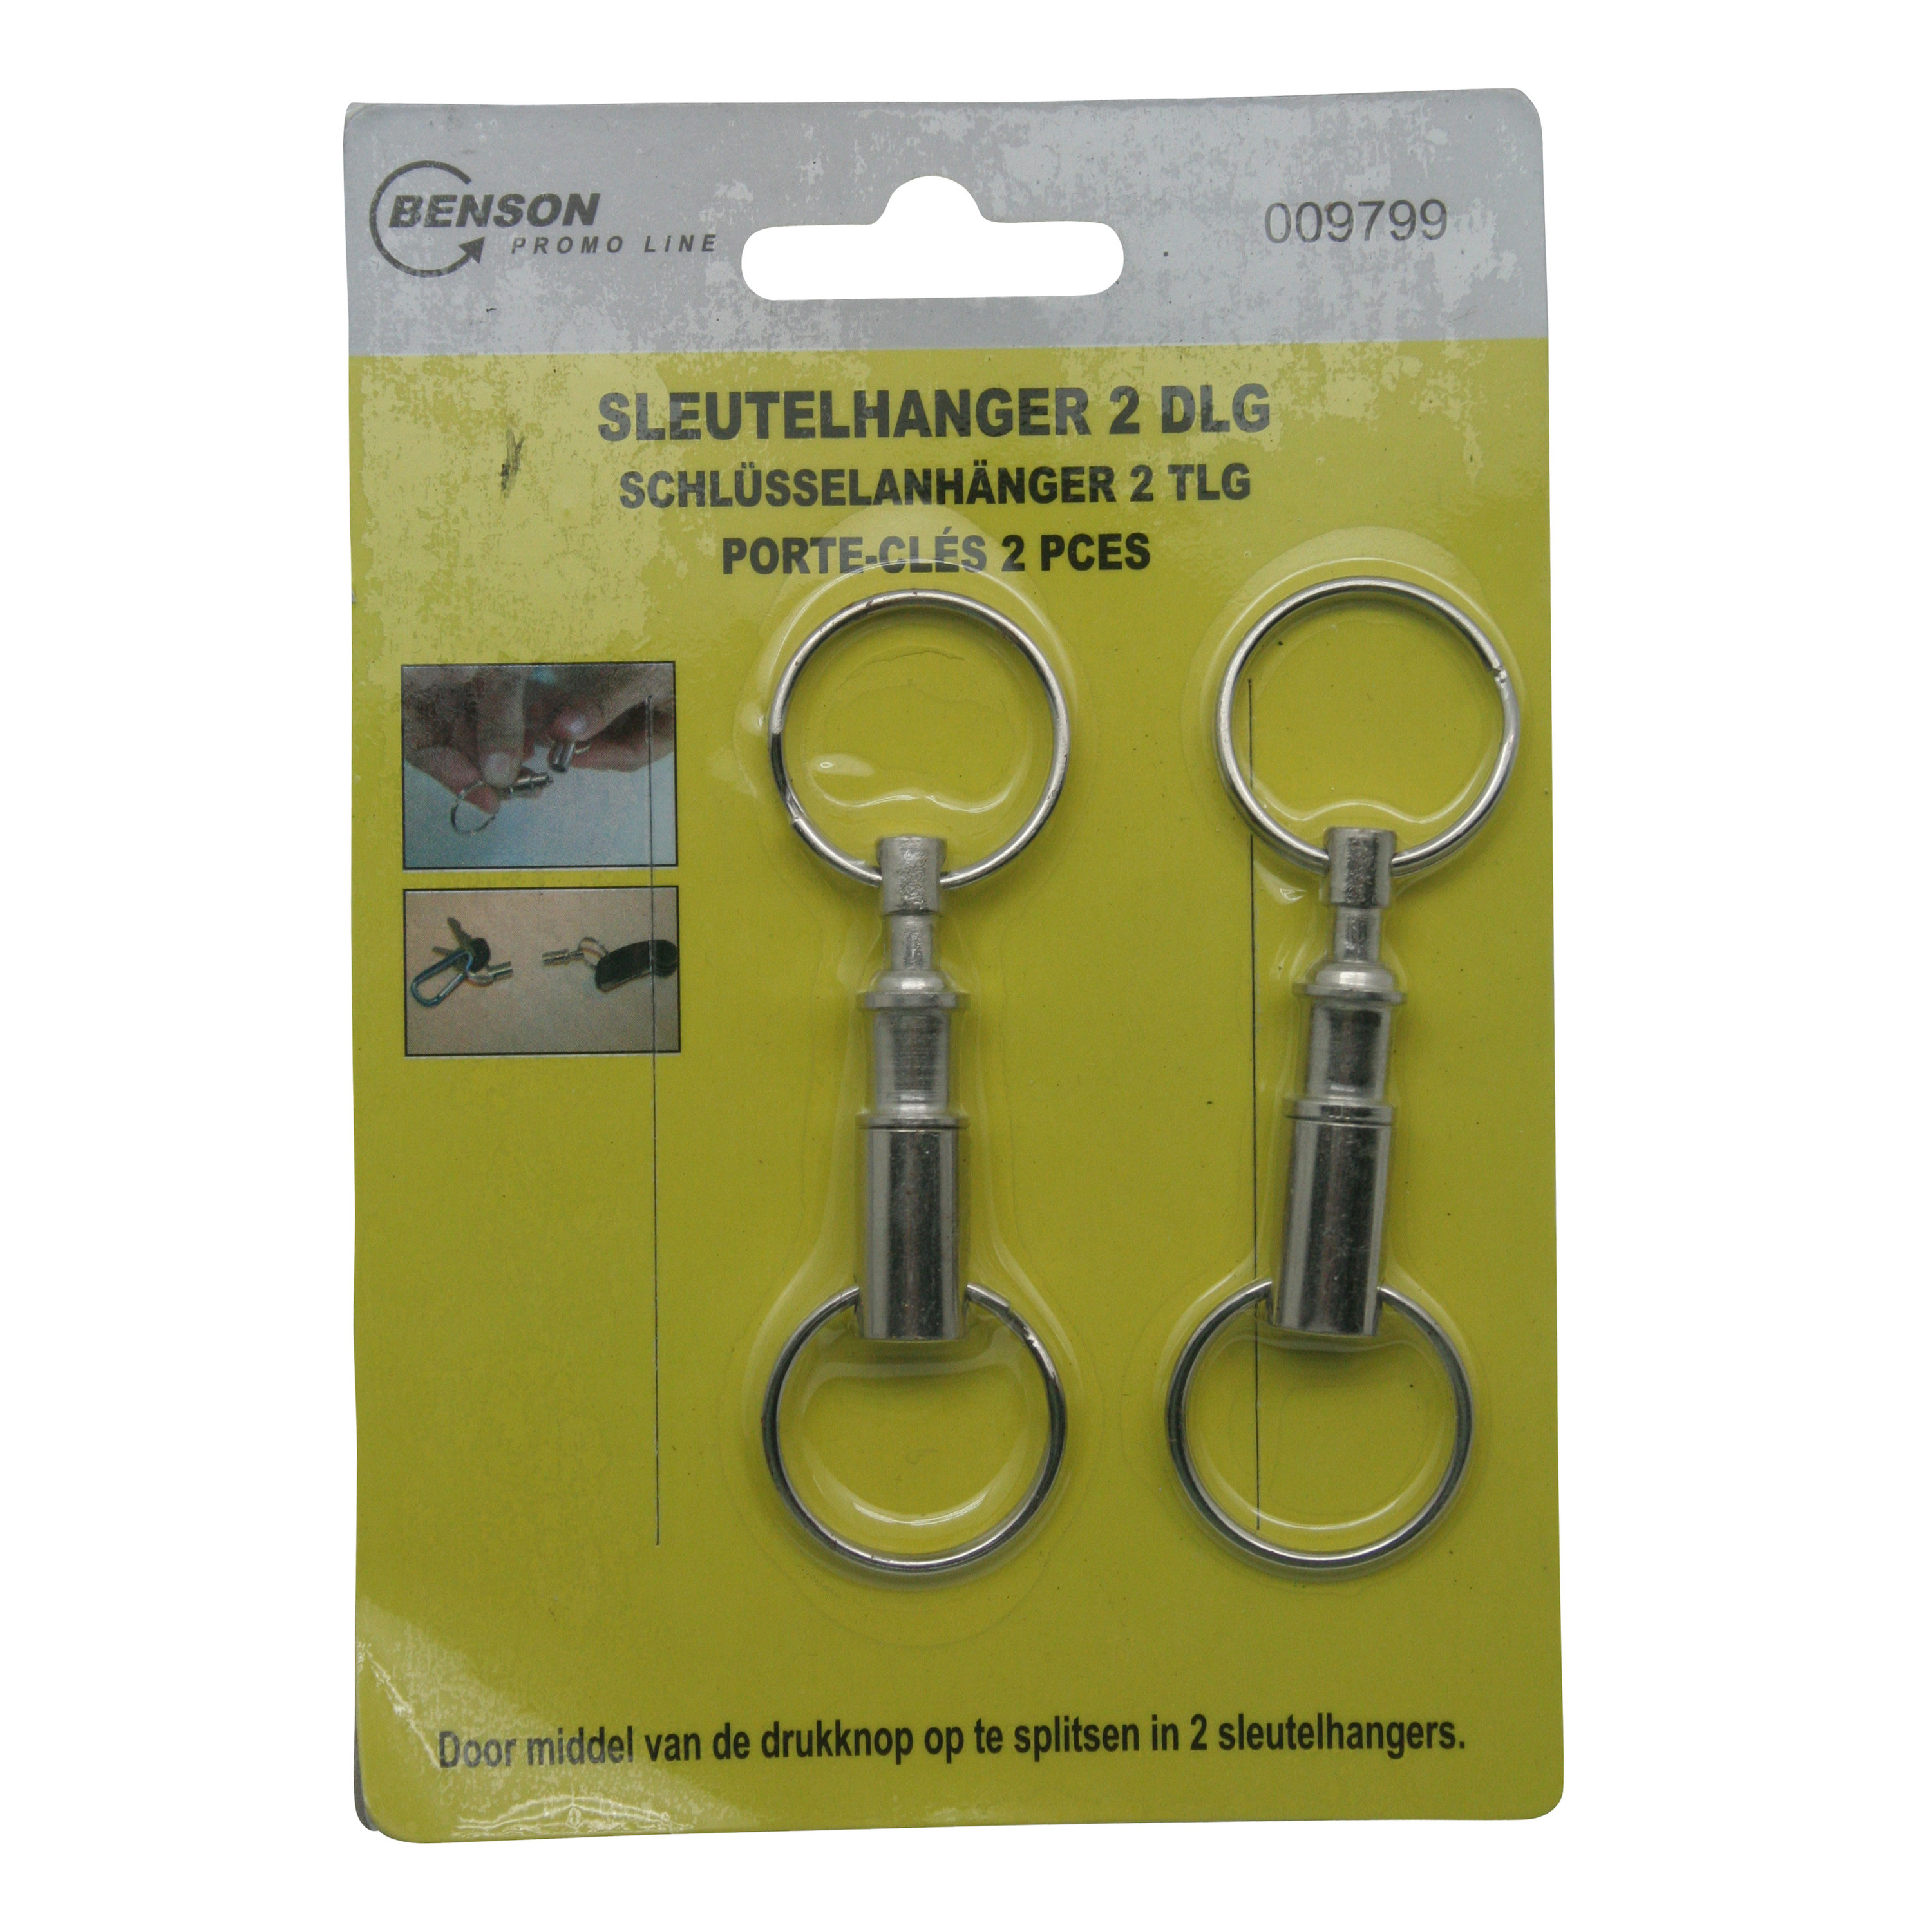 2x Sleutelhangers / key snaps metaal zilver met sleutelringen